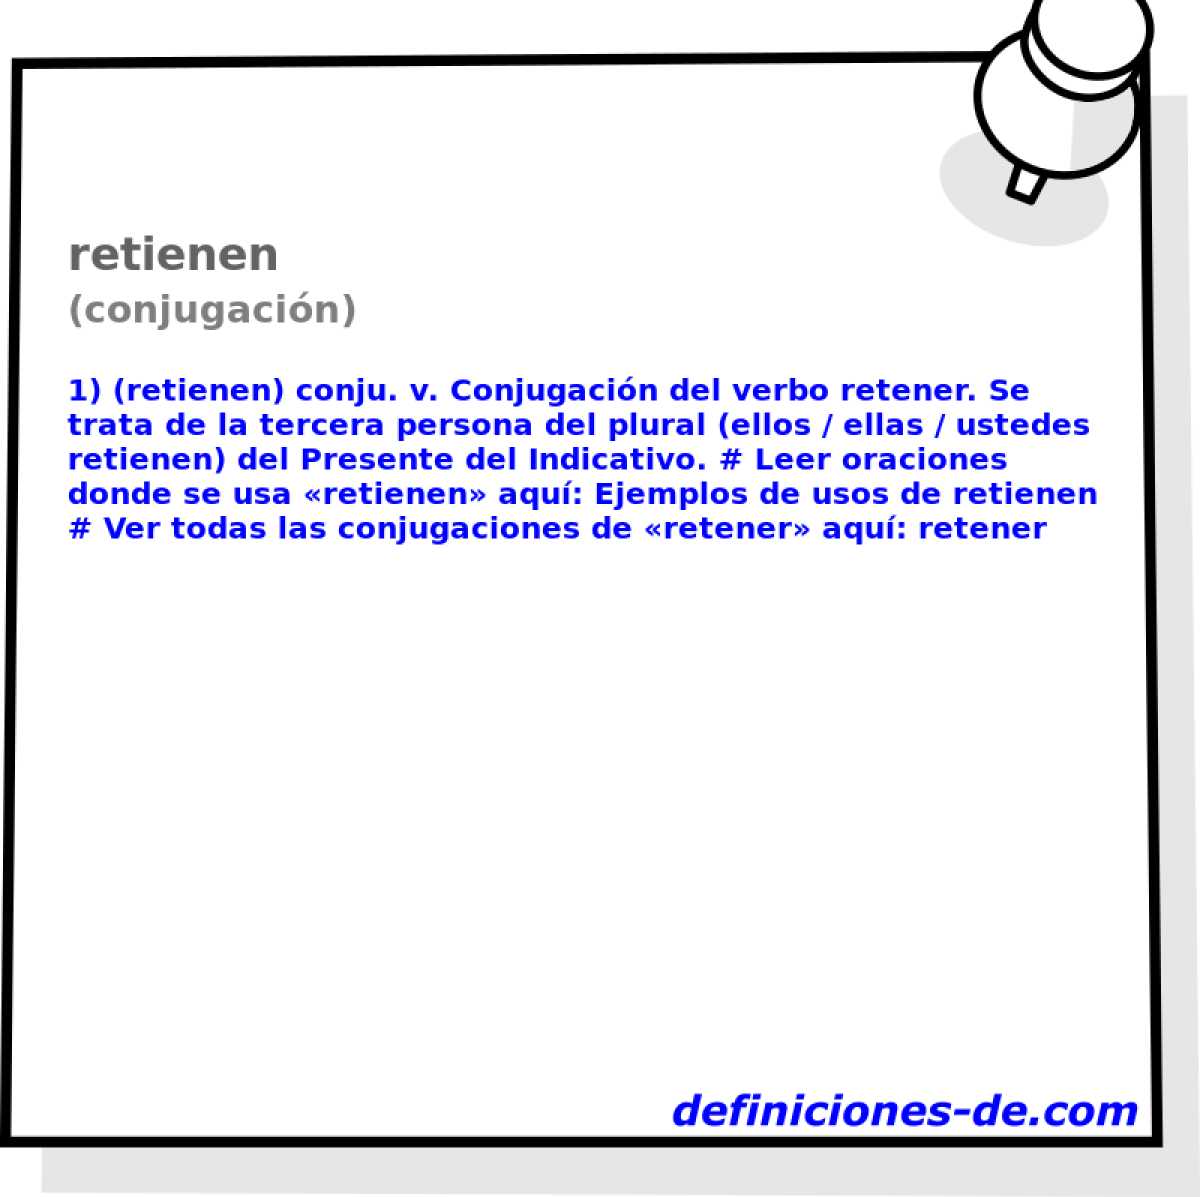 retienen (conjugacin)